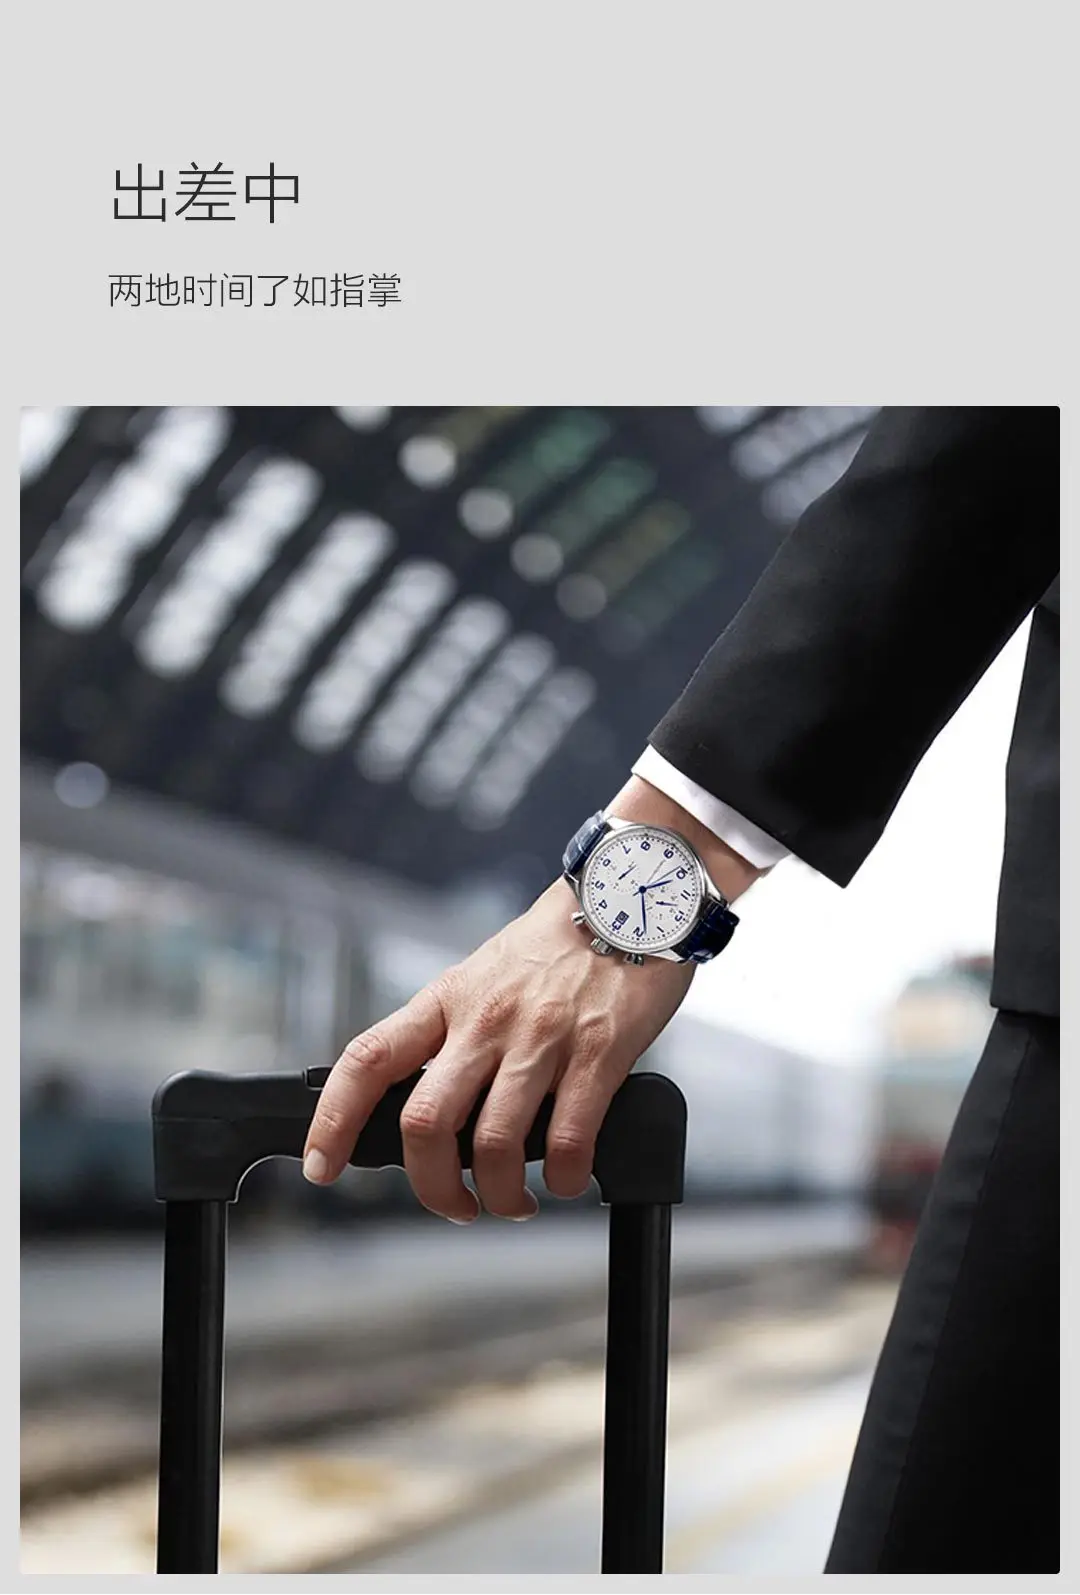 Xiaomi Бизнес Кварцевые часы TwentySeventeen Высокое качество элегантность сталь кожаный ремешок подарок для мальчика друг человек